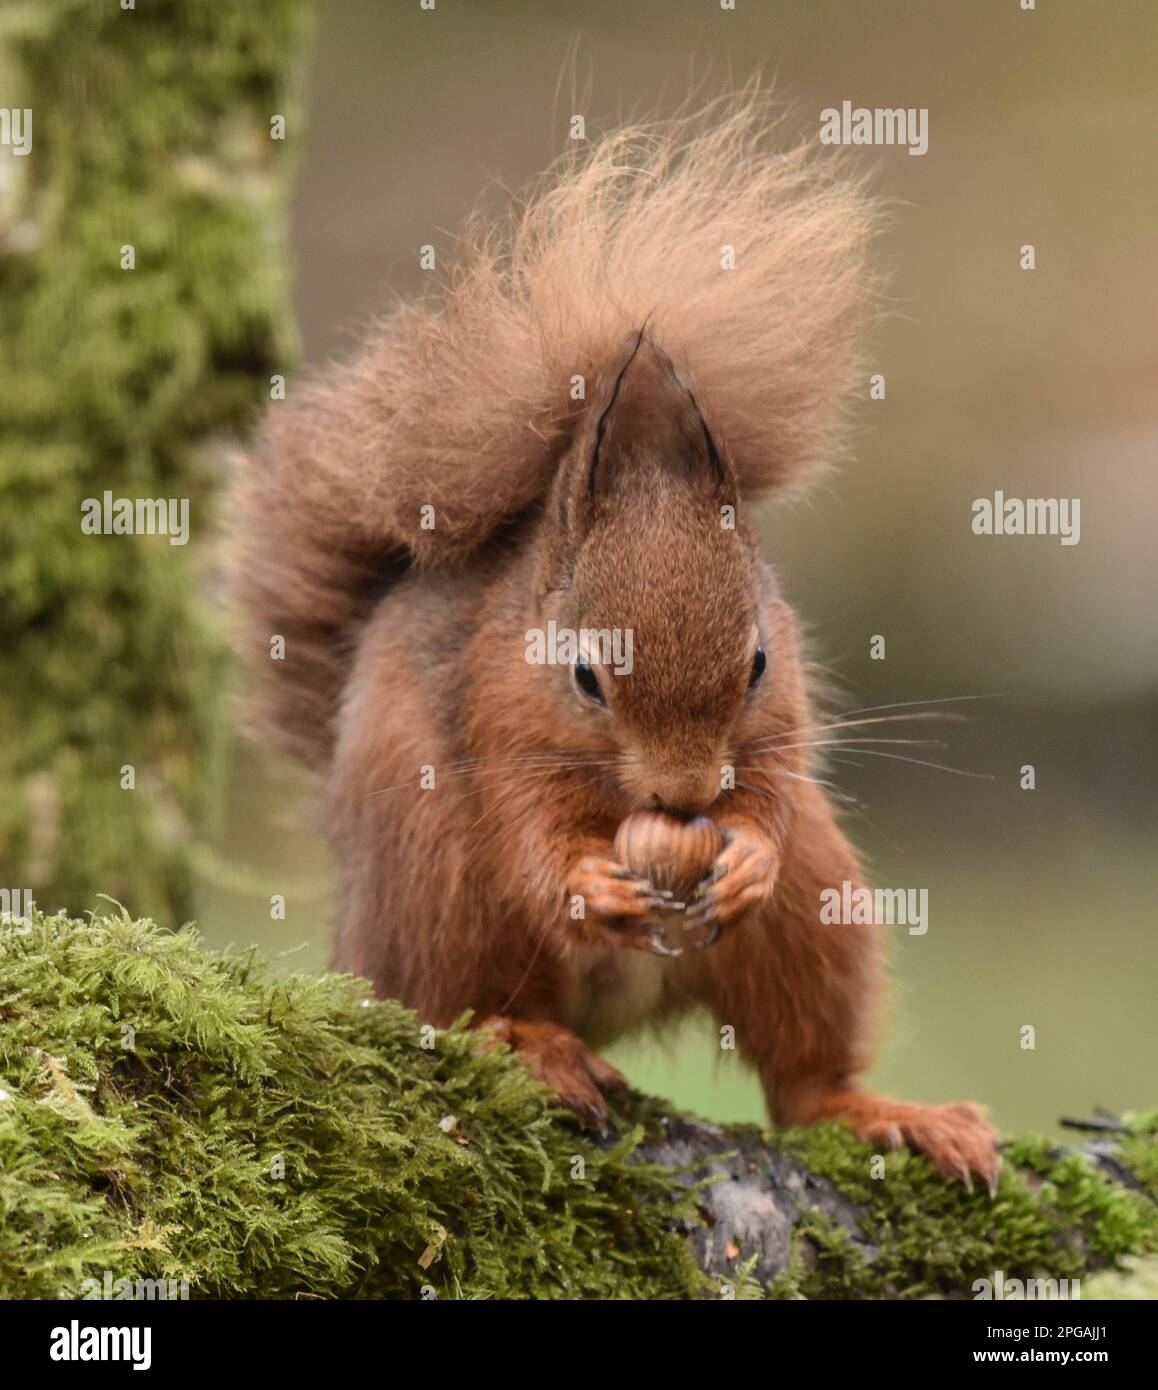 Vista frontale dello scoiattolo rosso scozzese a rischio di estinzione che mangia una noce su uno sfondo verde Foto Stock